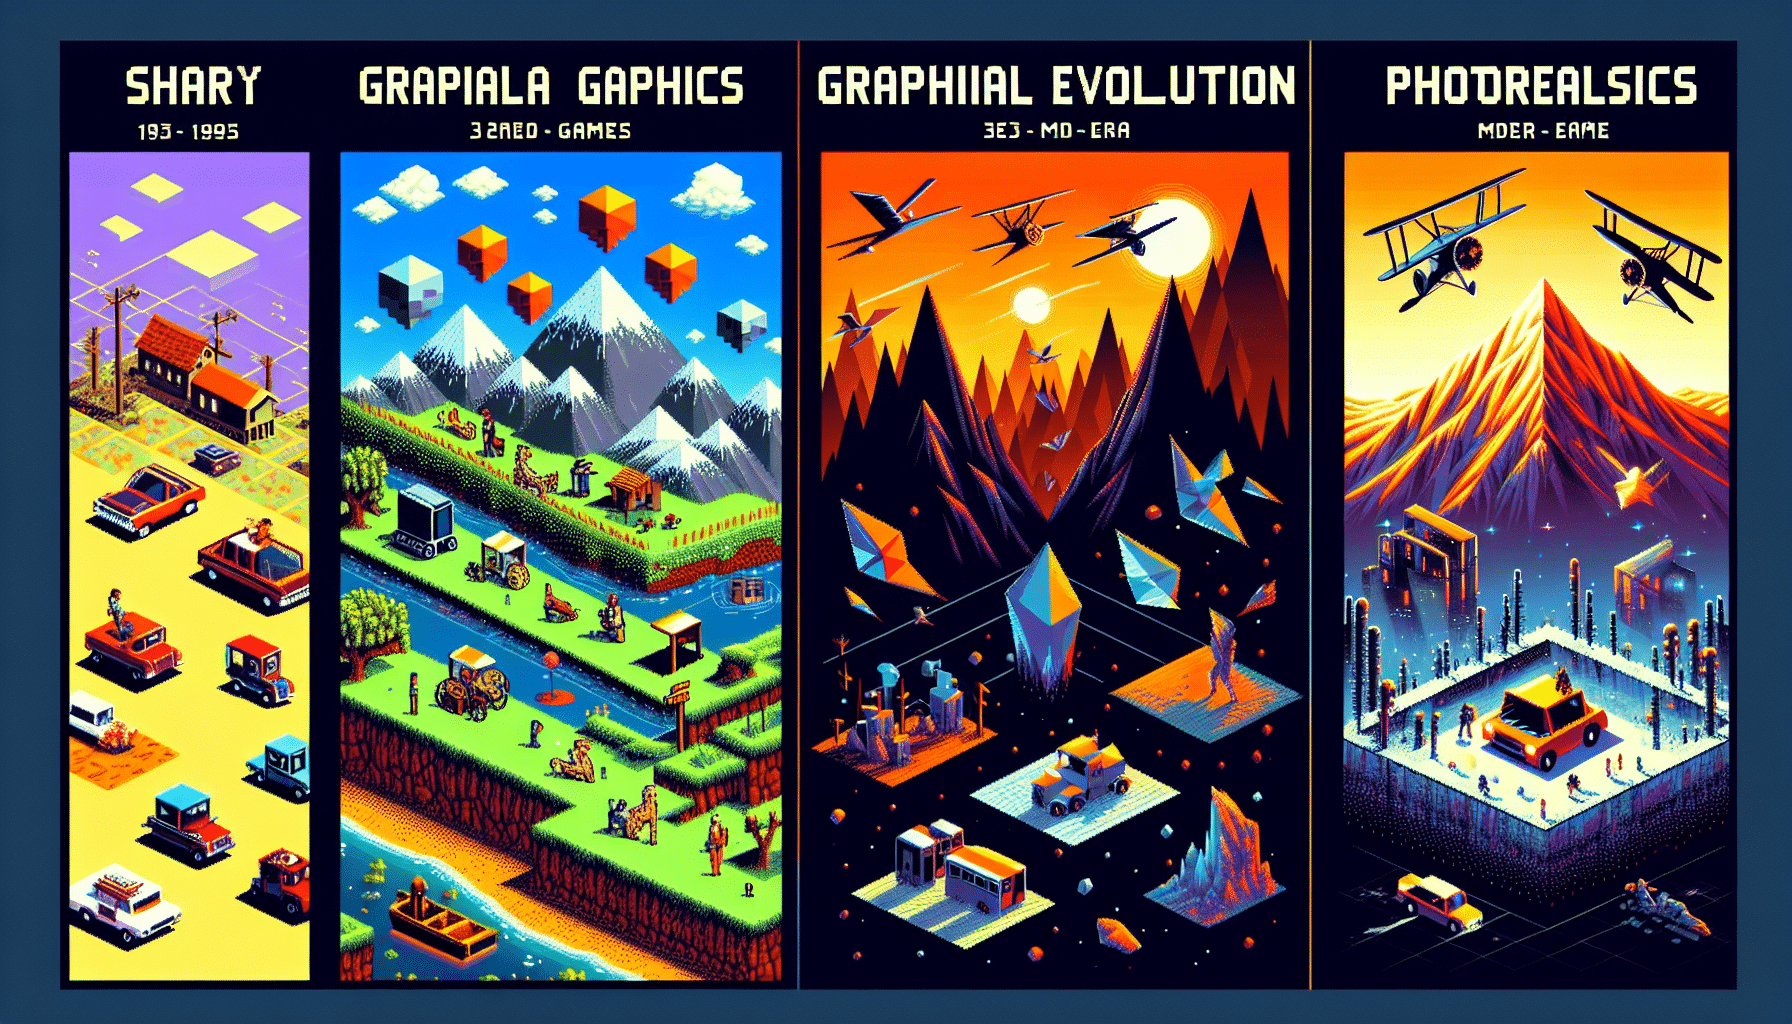 découvrez le débat sur les graphismes dans les jeux vidéo : s'agit-il d'une révolution ou simplement d'une évolution ? analyse et réflexion sur l'avenir des graphismes dans l'industrie du jeu vidéo.